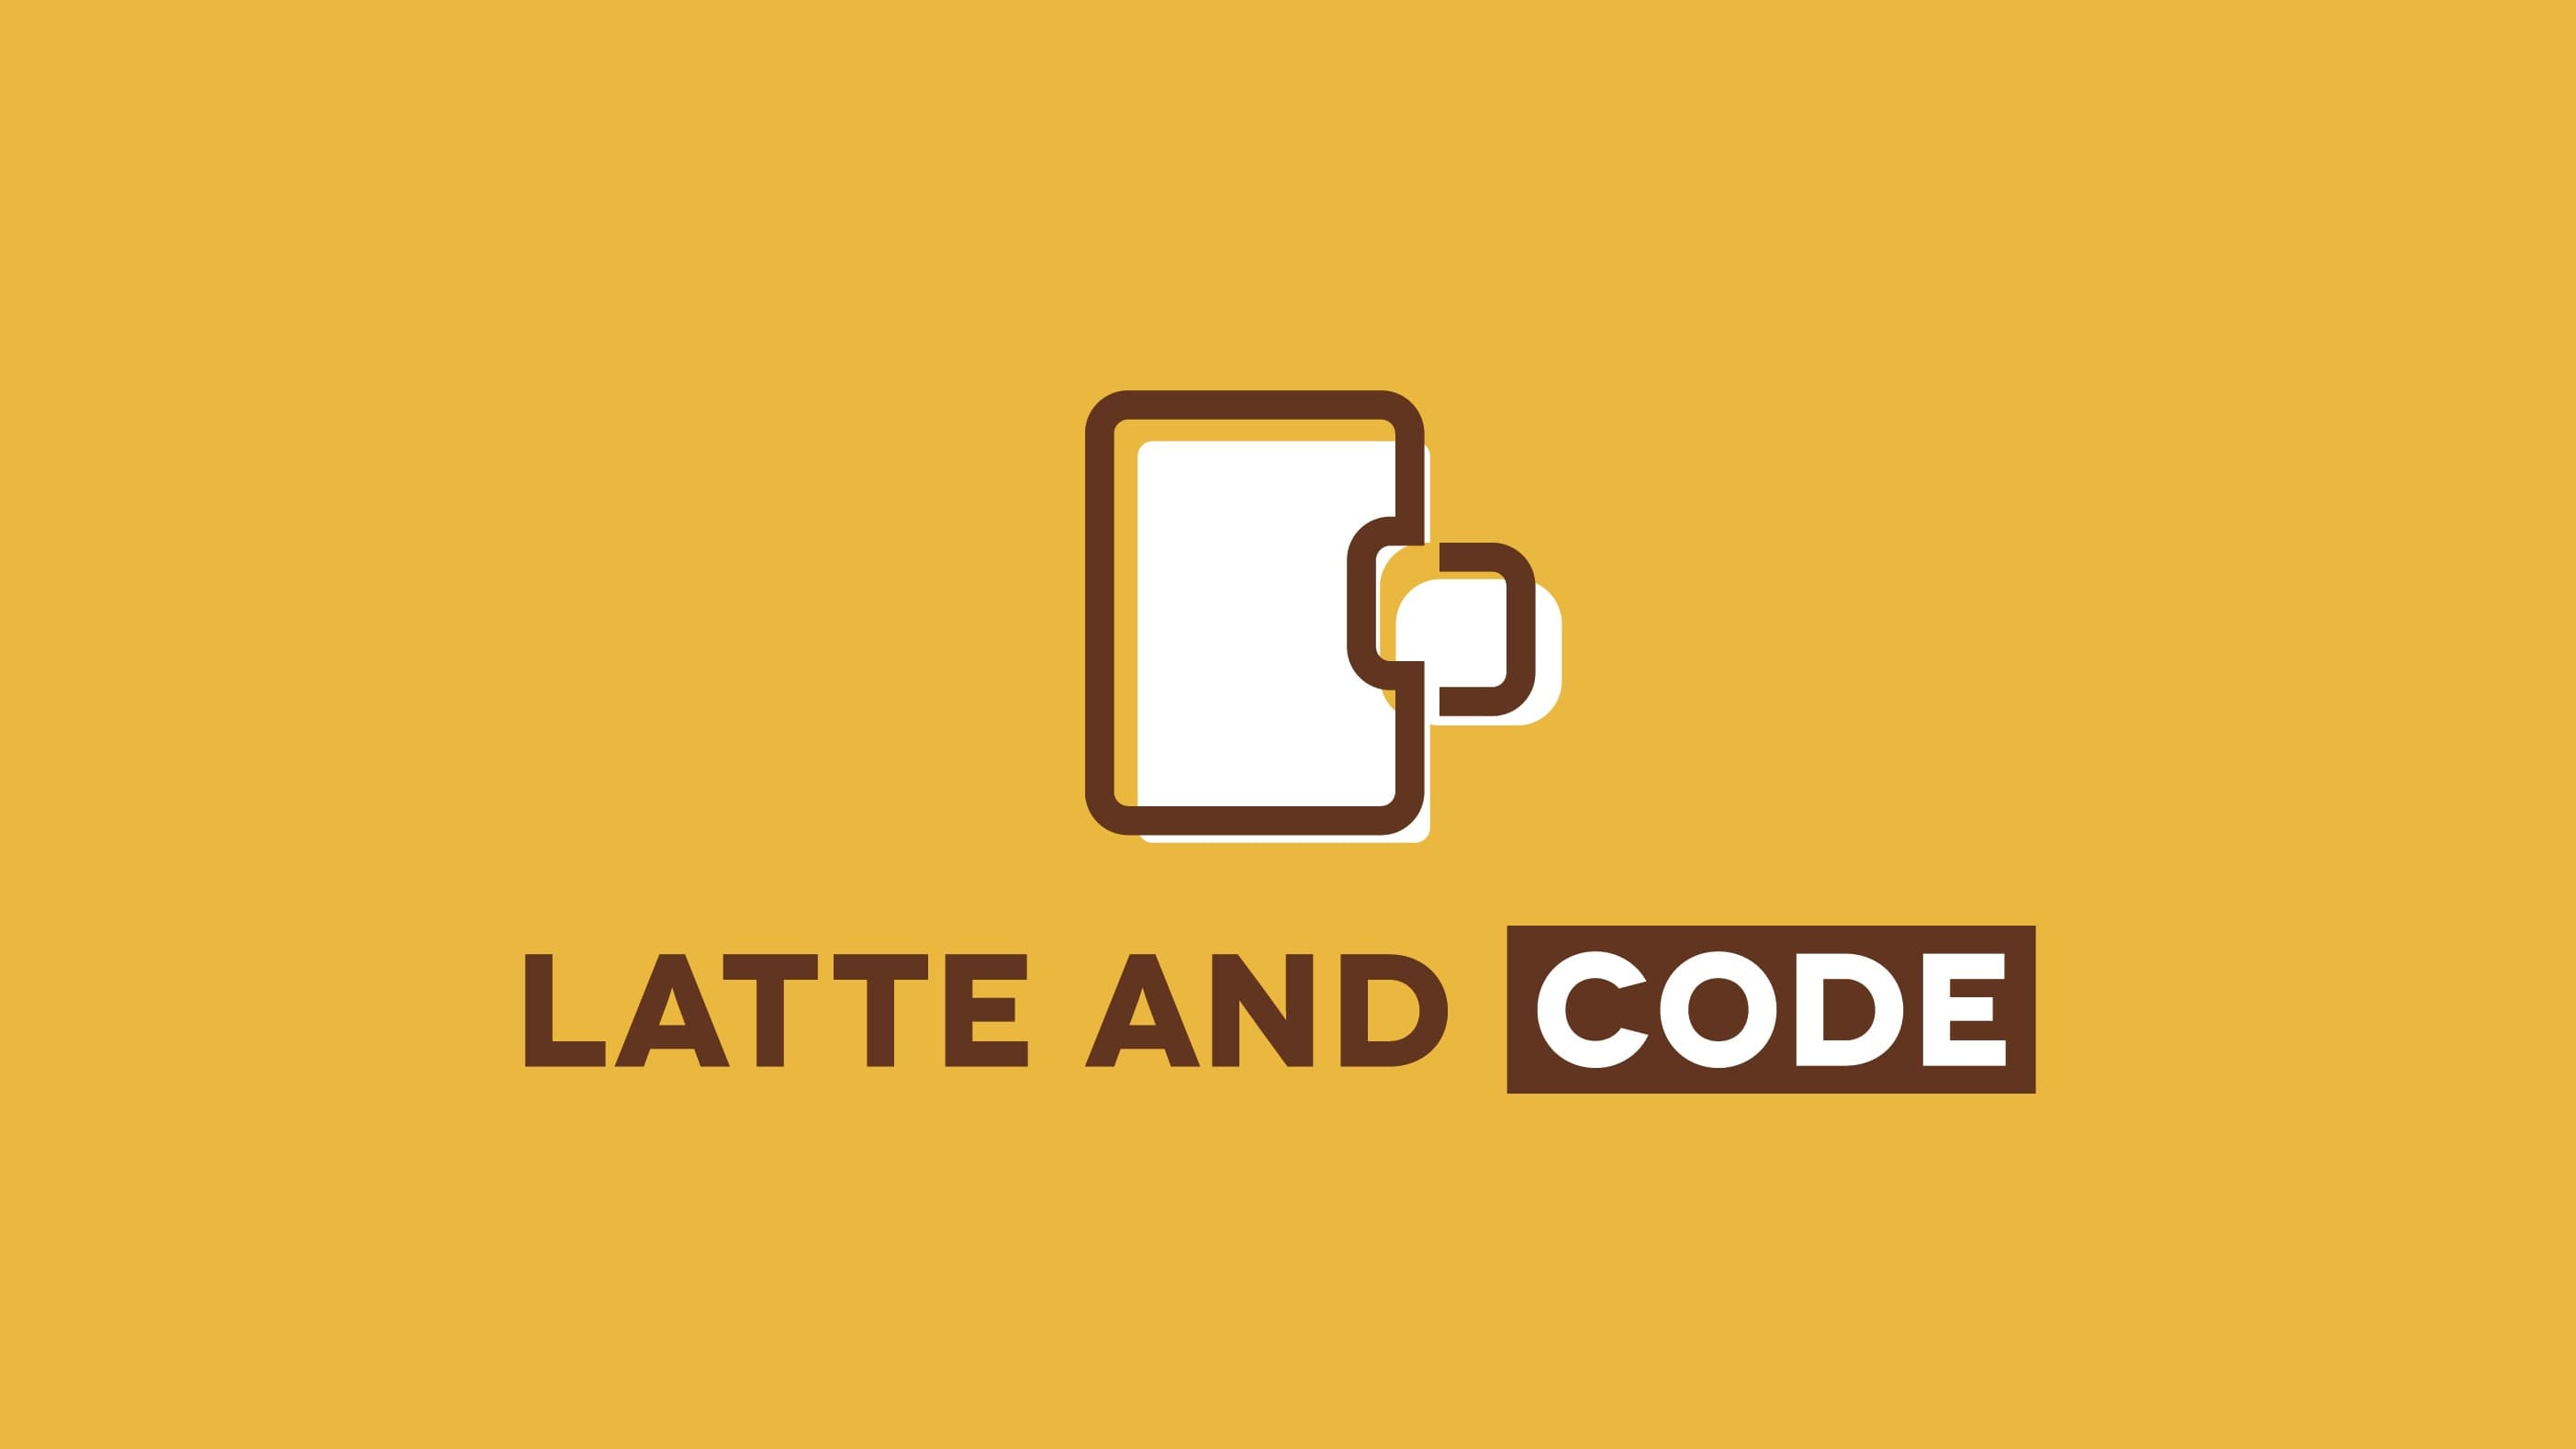 Image con mi foto de fondo y el logo de mi marca Latte and Code que representa una taza de café en formato código